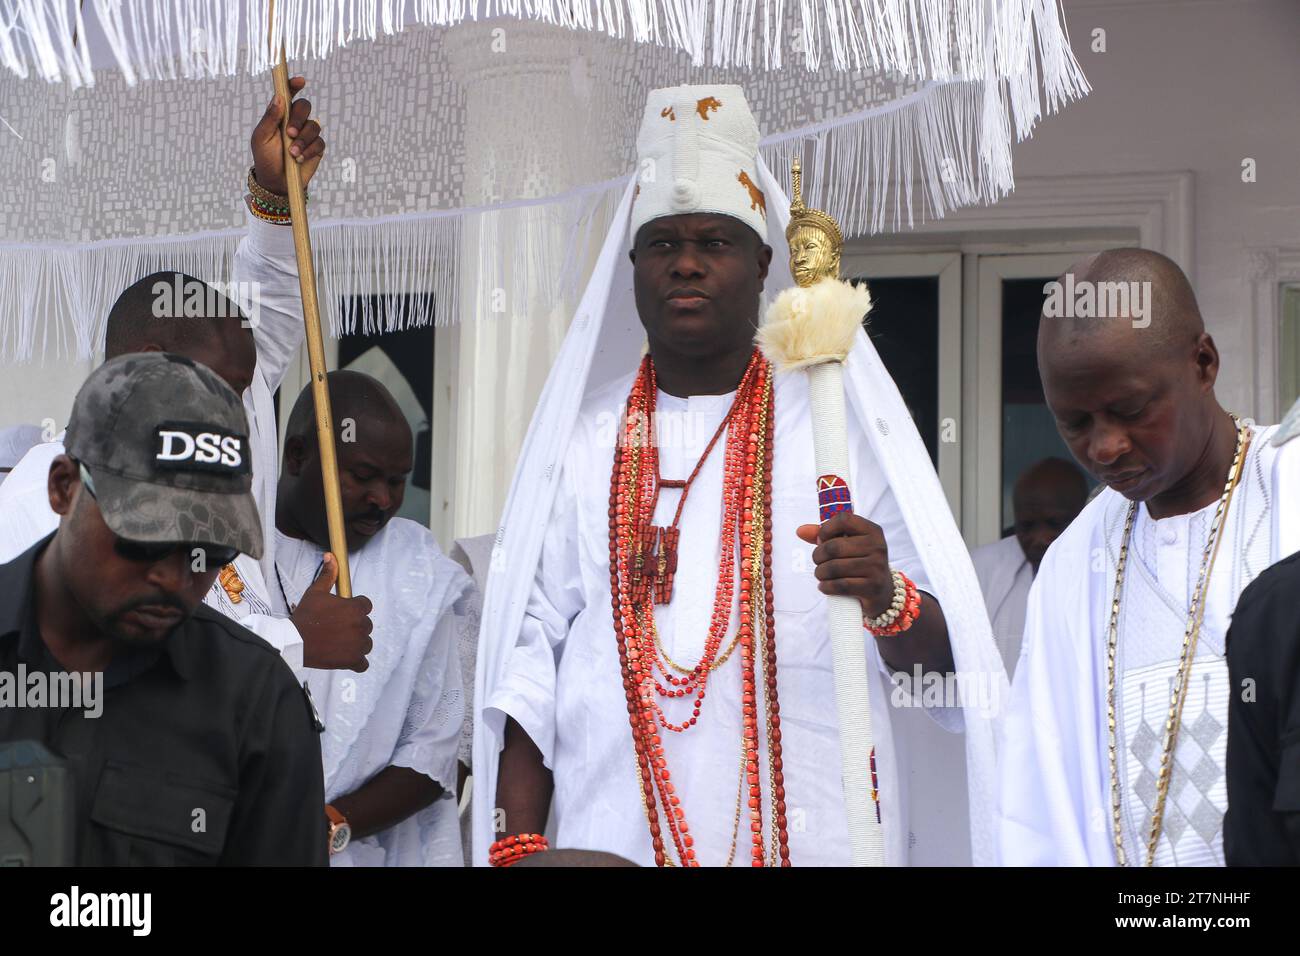 OBA Adeyeye Enitan Ogunwusi (Zentrum) die Ooni of Ife, der traditionelle Monarch, feiert das Olojo Festival in Ile-Ife, im Bundesstaat Osun. Das Olojo-Festival ist eine Feier von Ogun, dem Gott von Eisen, und erinnert an den Abstieg von Oduduwa zur Ile-Ife, die Feier des ersten Sonnenaufgangs, des ersten Nachmittags und der ersten Nacht der Schöpfung. Das Olojo-Festival ist eines der ältesten in Afrika, das im ganzen Yoruba-Land gefeiert wird. Es feiert den Beginn des ersten Tages der Existenz auf der Erde, wo der Monarch die heilige Krone trägt, die größere Bedeutung bei der Olojo-Feier in Nigeria hat. Stockfoto